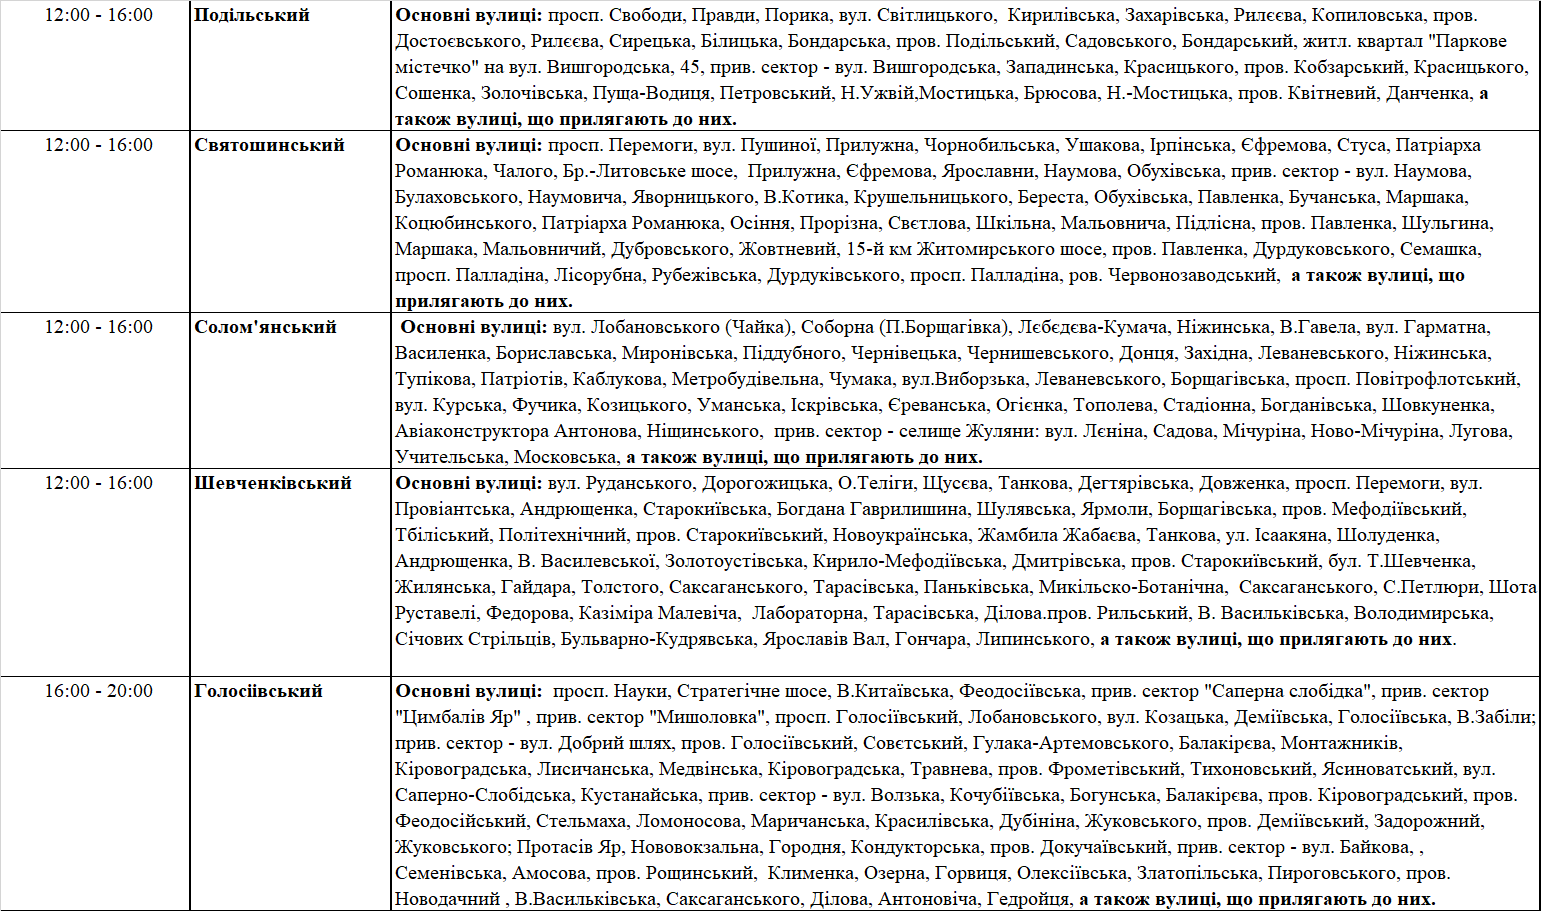 ДТЭК опубликовал графики отключения света в Киеве и области